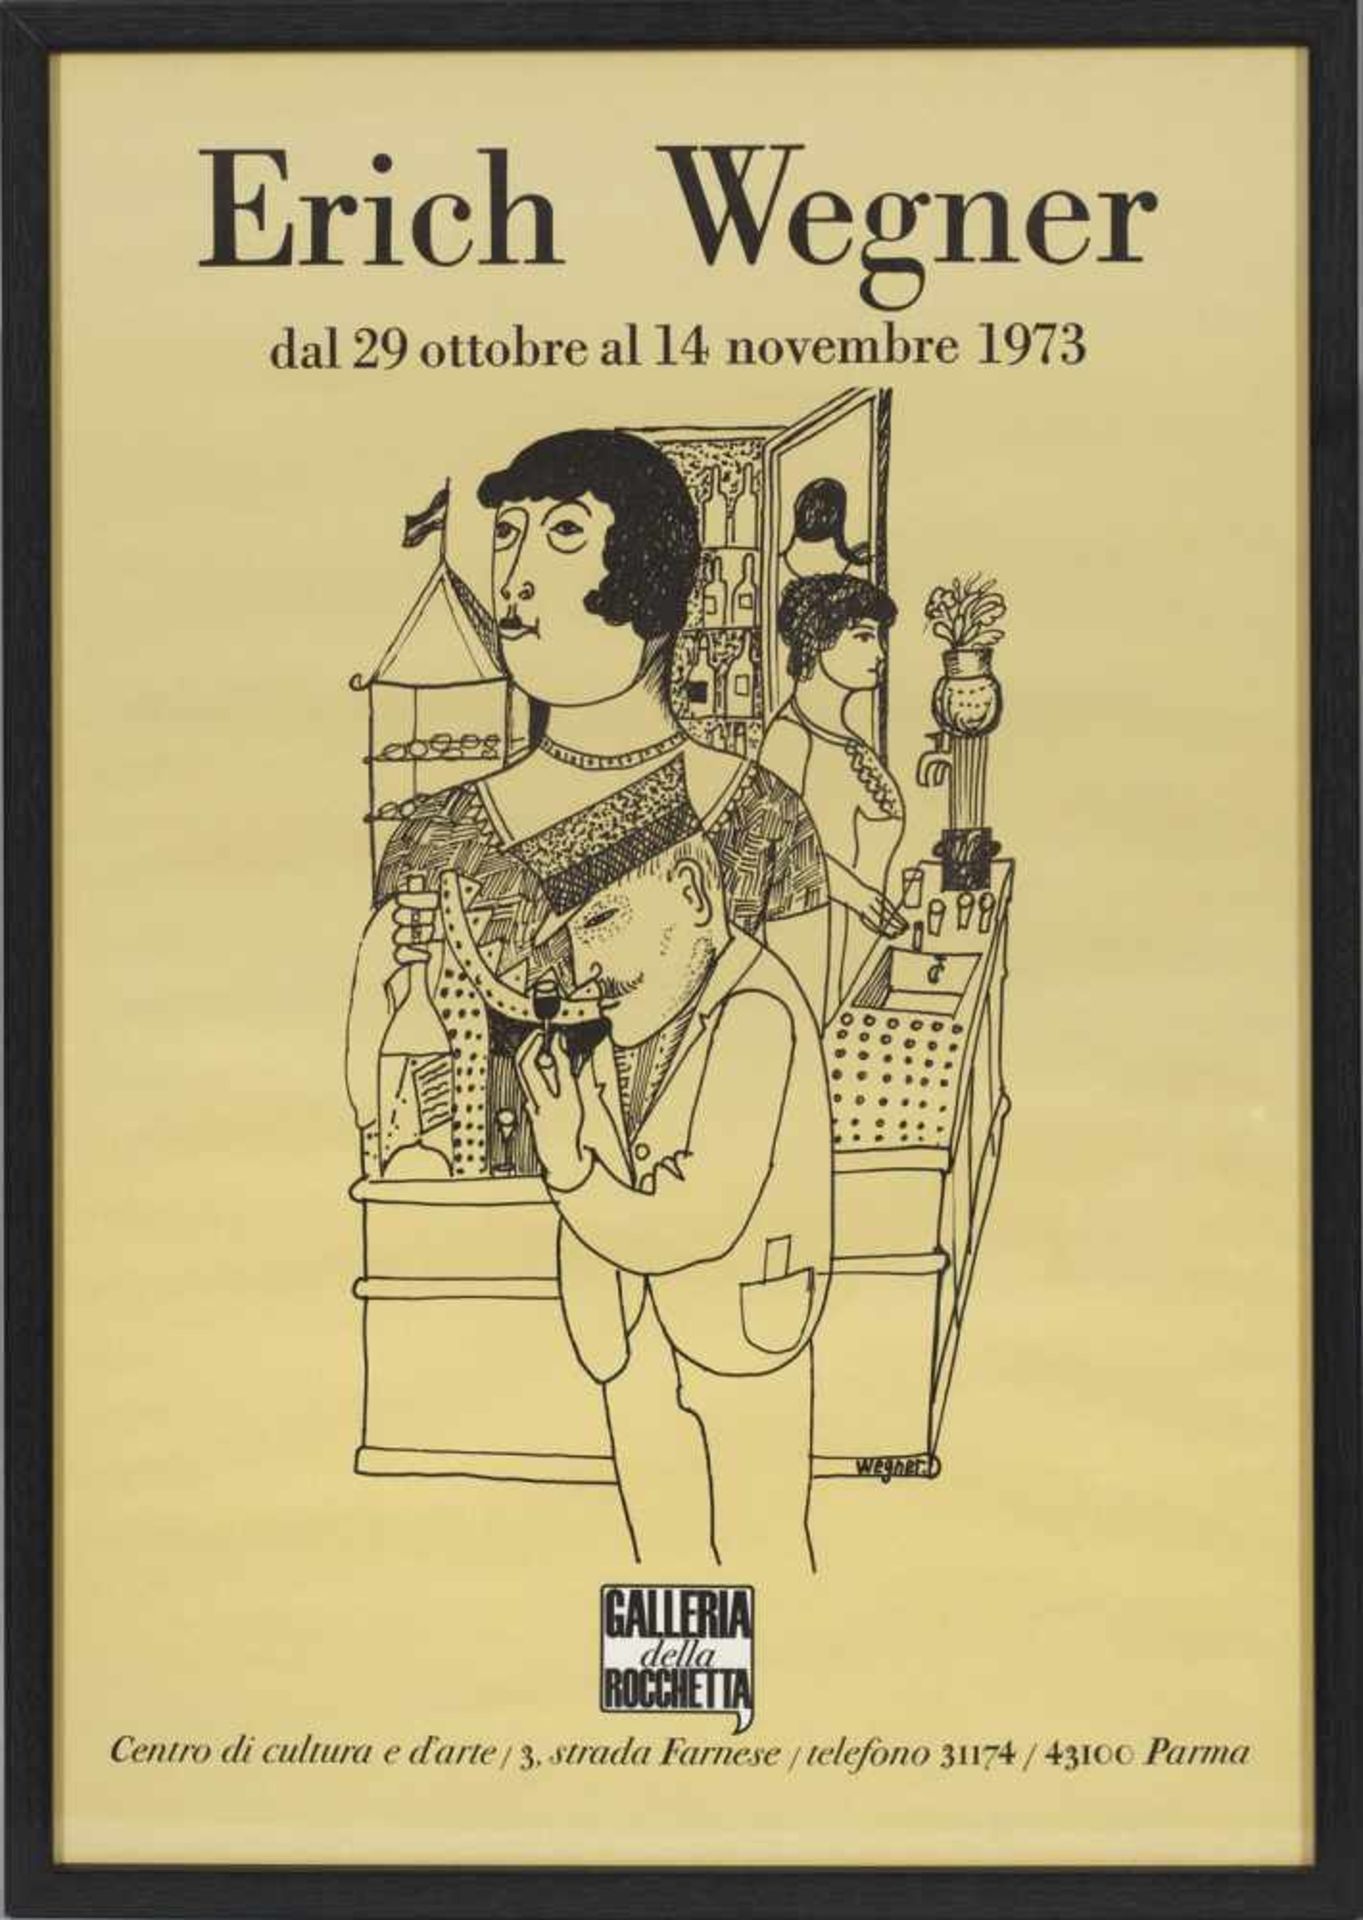 Erich Wegner(1899 Gnoien - 1980 Hannover)Plakat für die Erich Wegner-Ausstellung in der Galleria